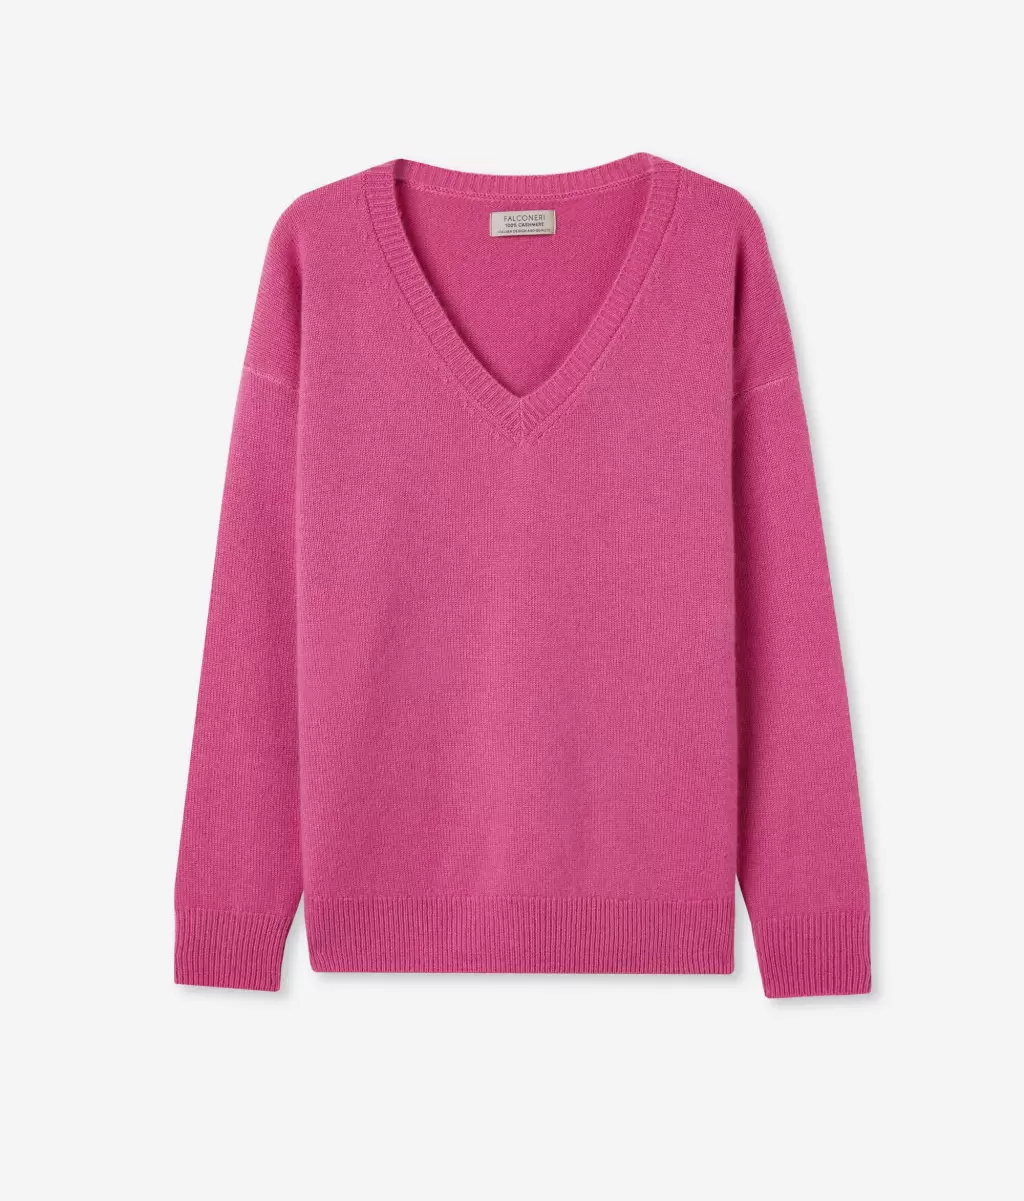 Kobieta Sweter Z Dekoltem W Serek I Rozcięciami Z Kaszmiru Ultrasoft Pink Swetry Z Dekoltem W Serek Falconeri - 4